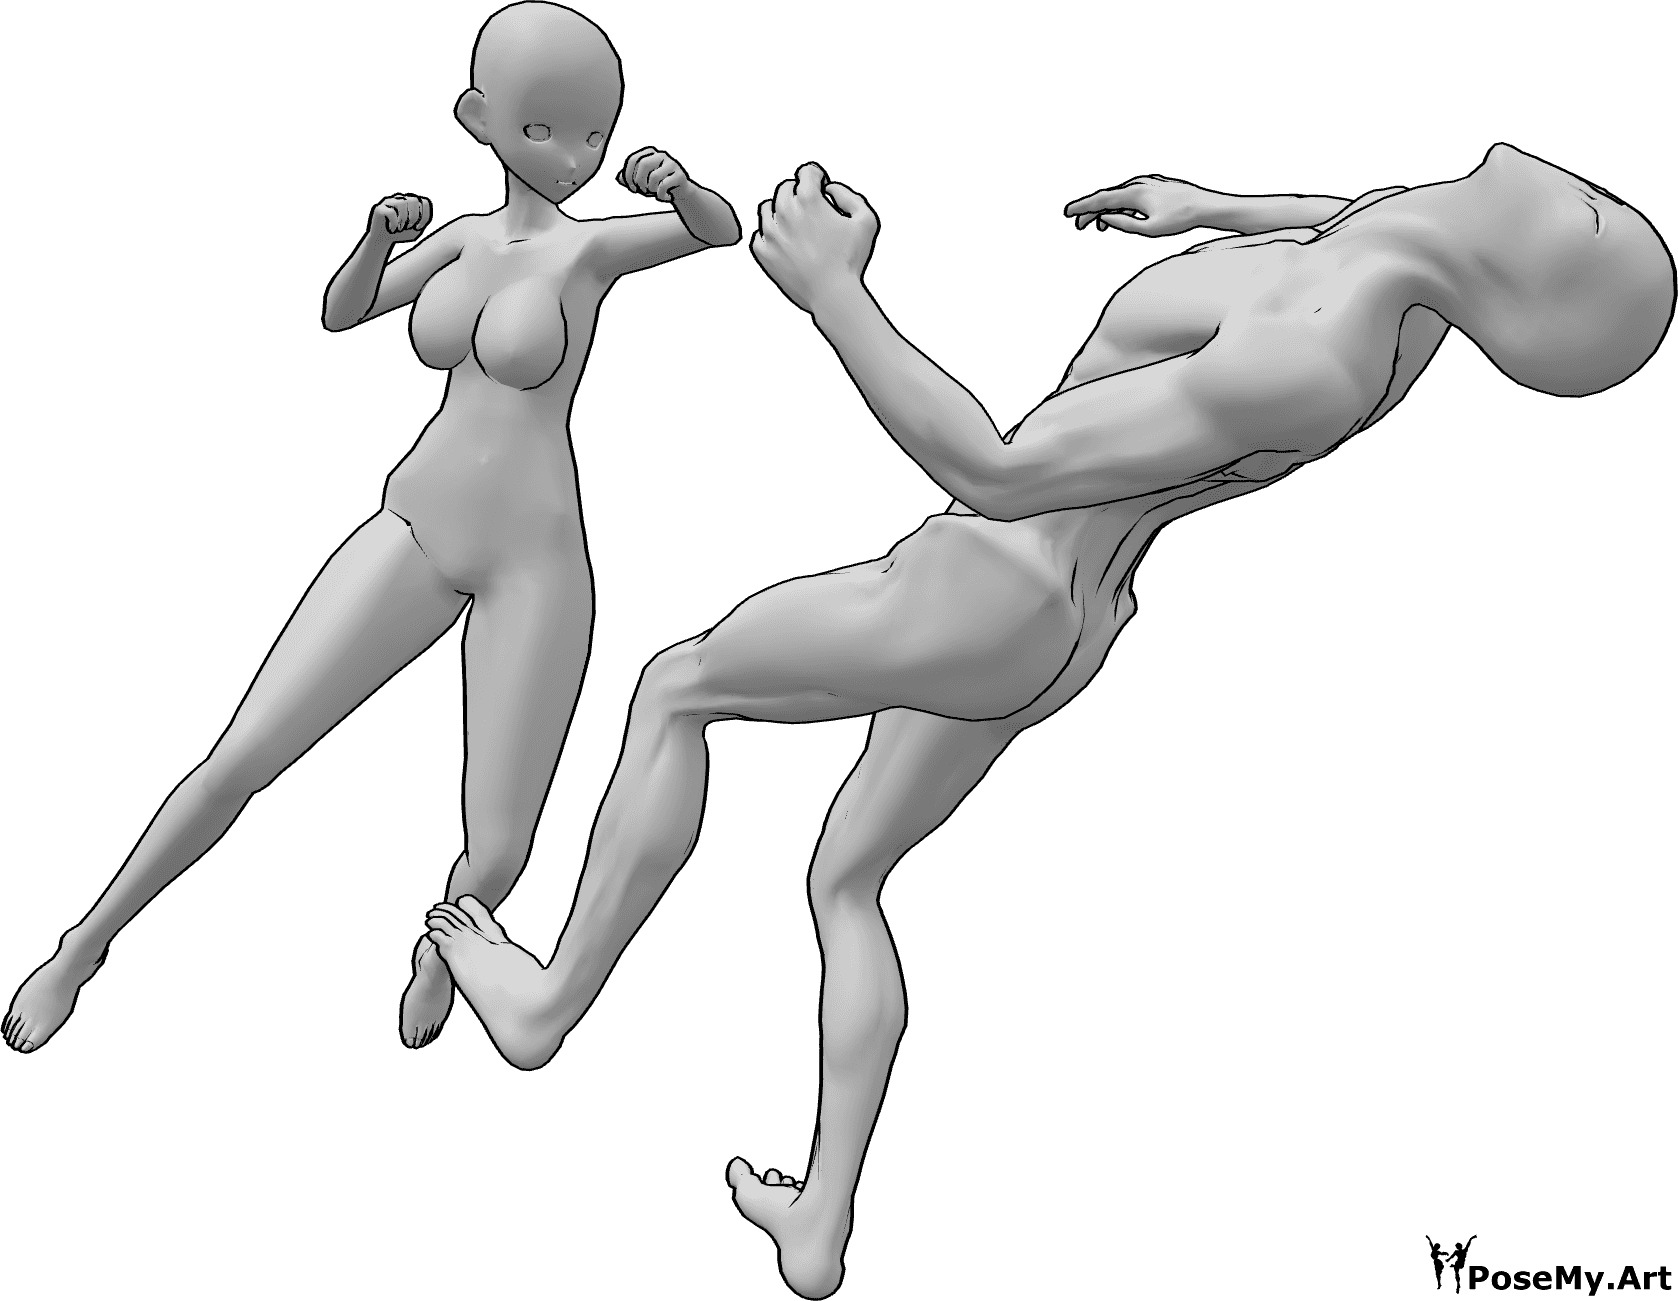 Posen-Referenz- Anime weibliche Schlag Pose - Der Gegner fällt durch einen Kopfstoß unbewusst nach hinten.